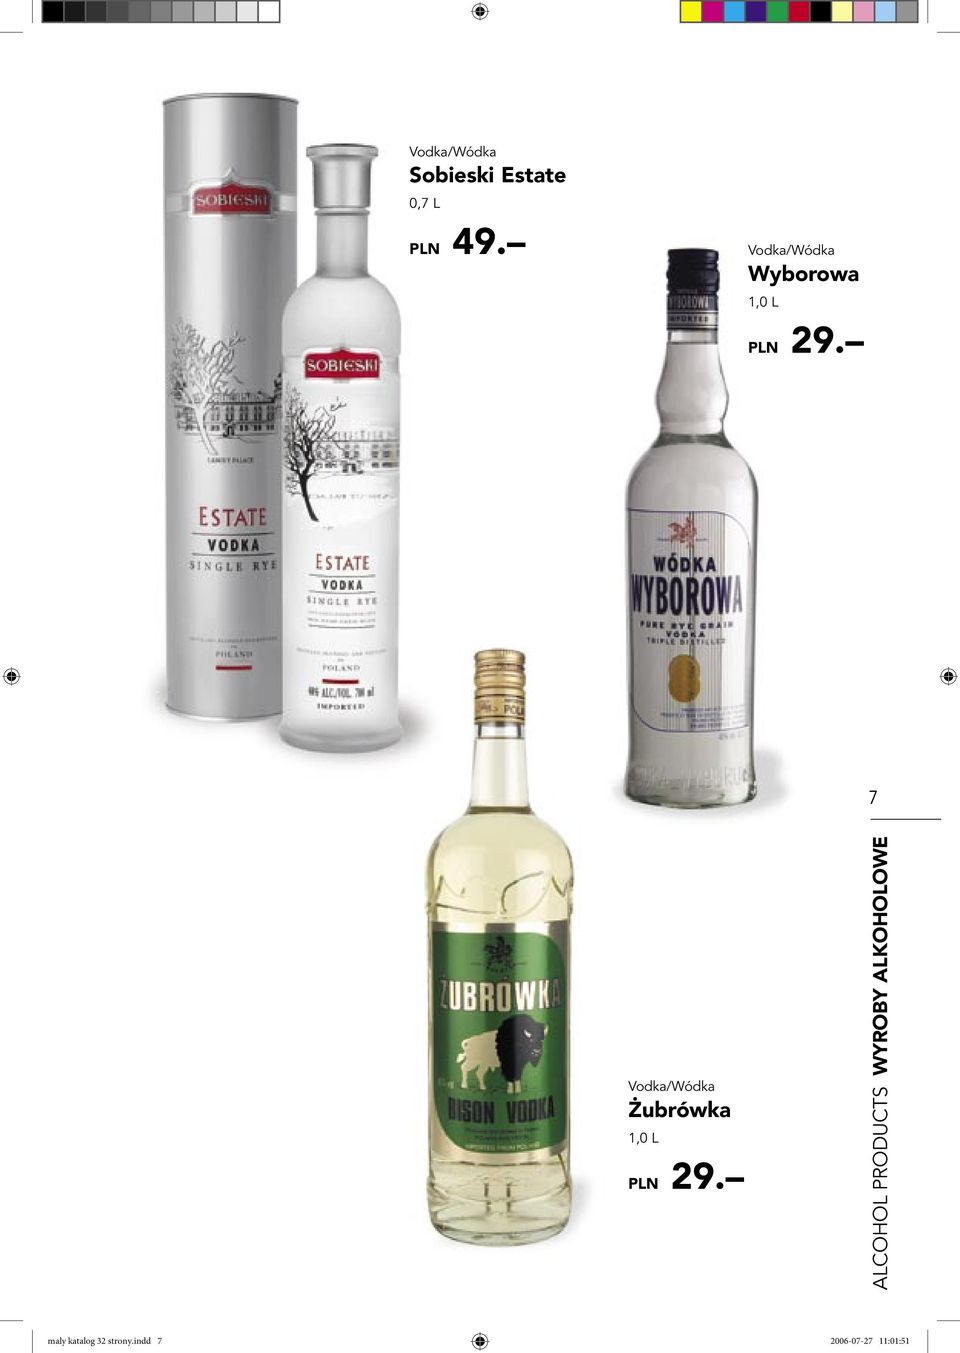 7 Vodka/Wódka Żubrówka 1,0 L PLN 29.